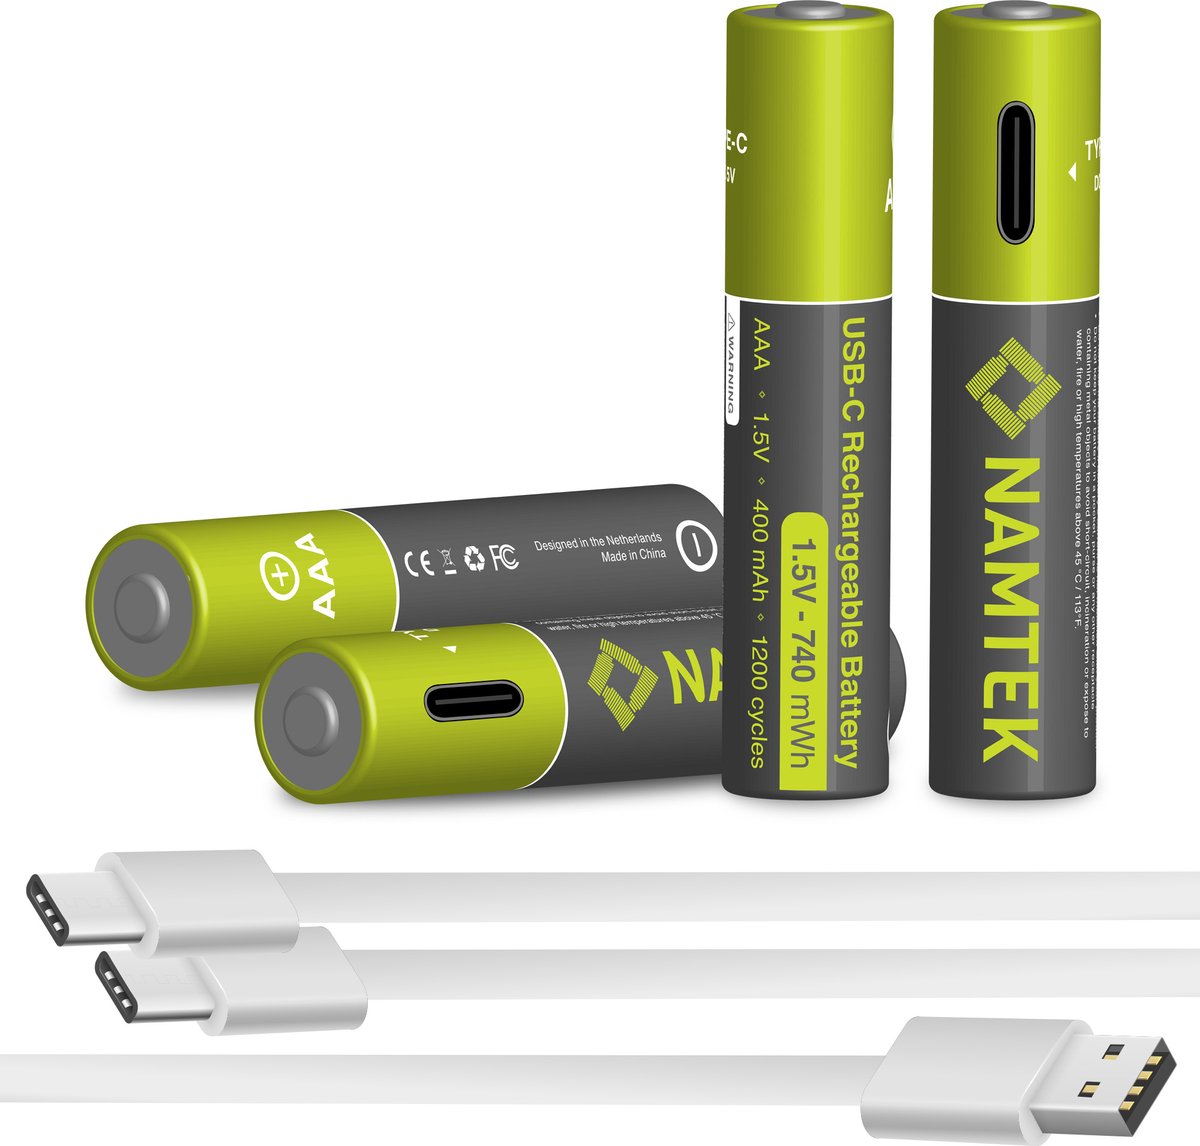 Namtek Oplaadbare batterijen AAA 1.5V 740 mWh met USB Type-C Kabel opladen - Lithium USB batterijen - Duurzame Keuze - 4 stuks